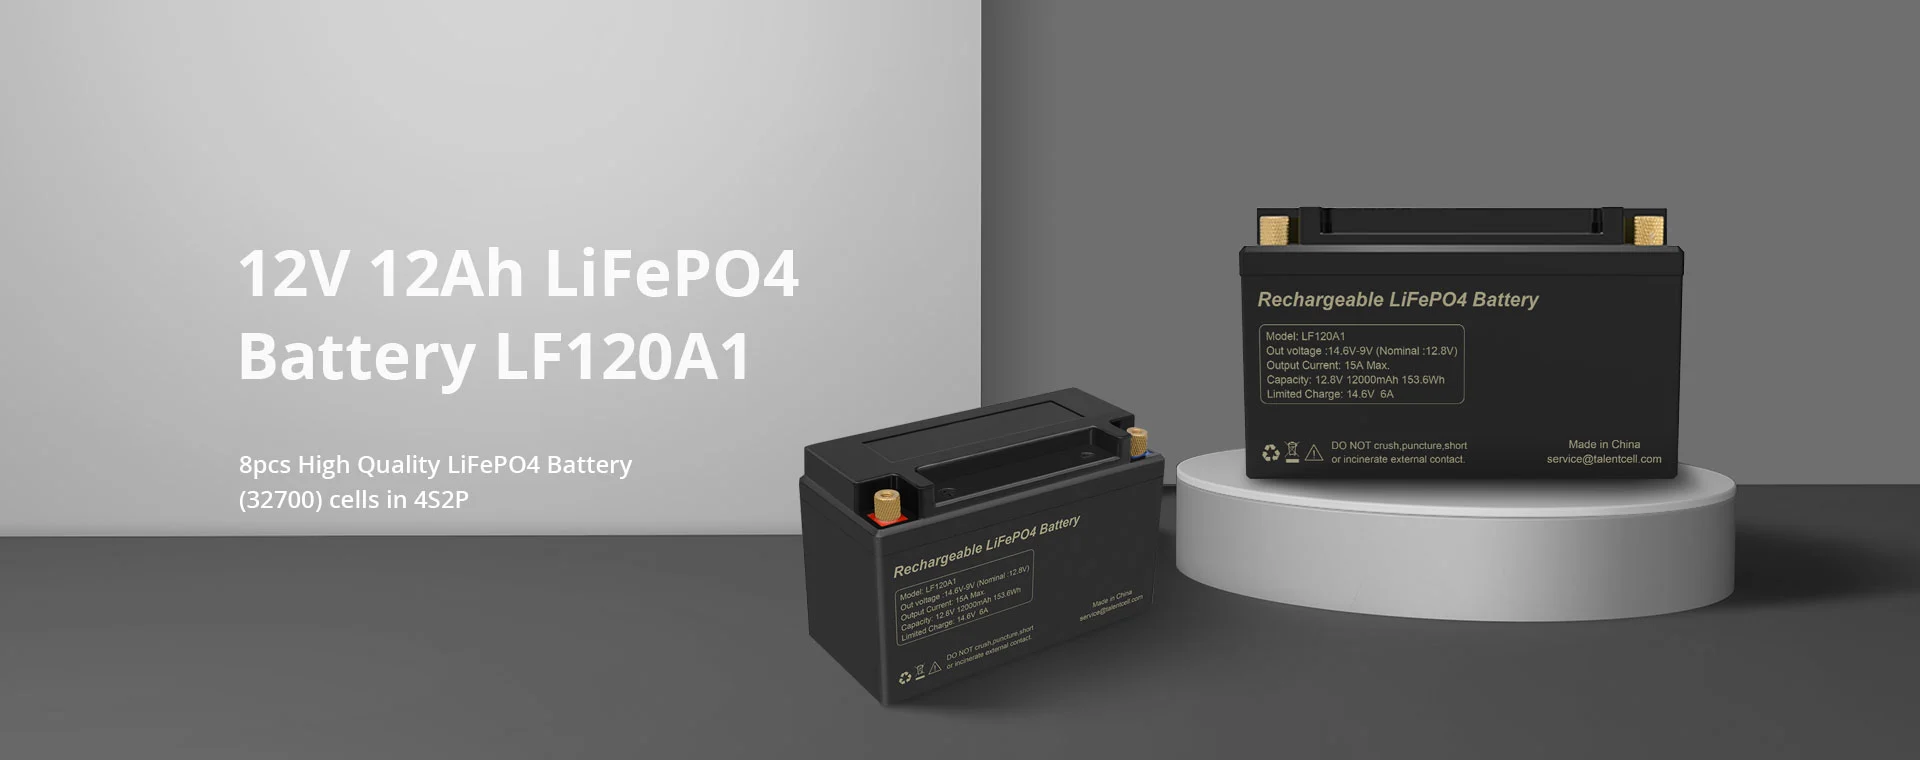 12V 6Ah LiFePO4 Battery